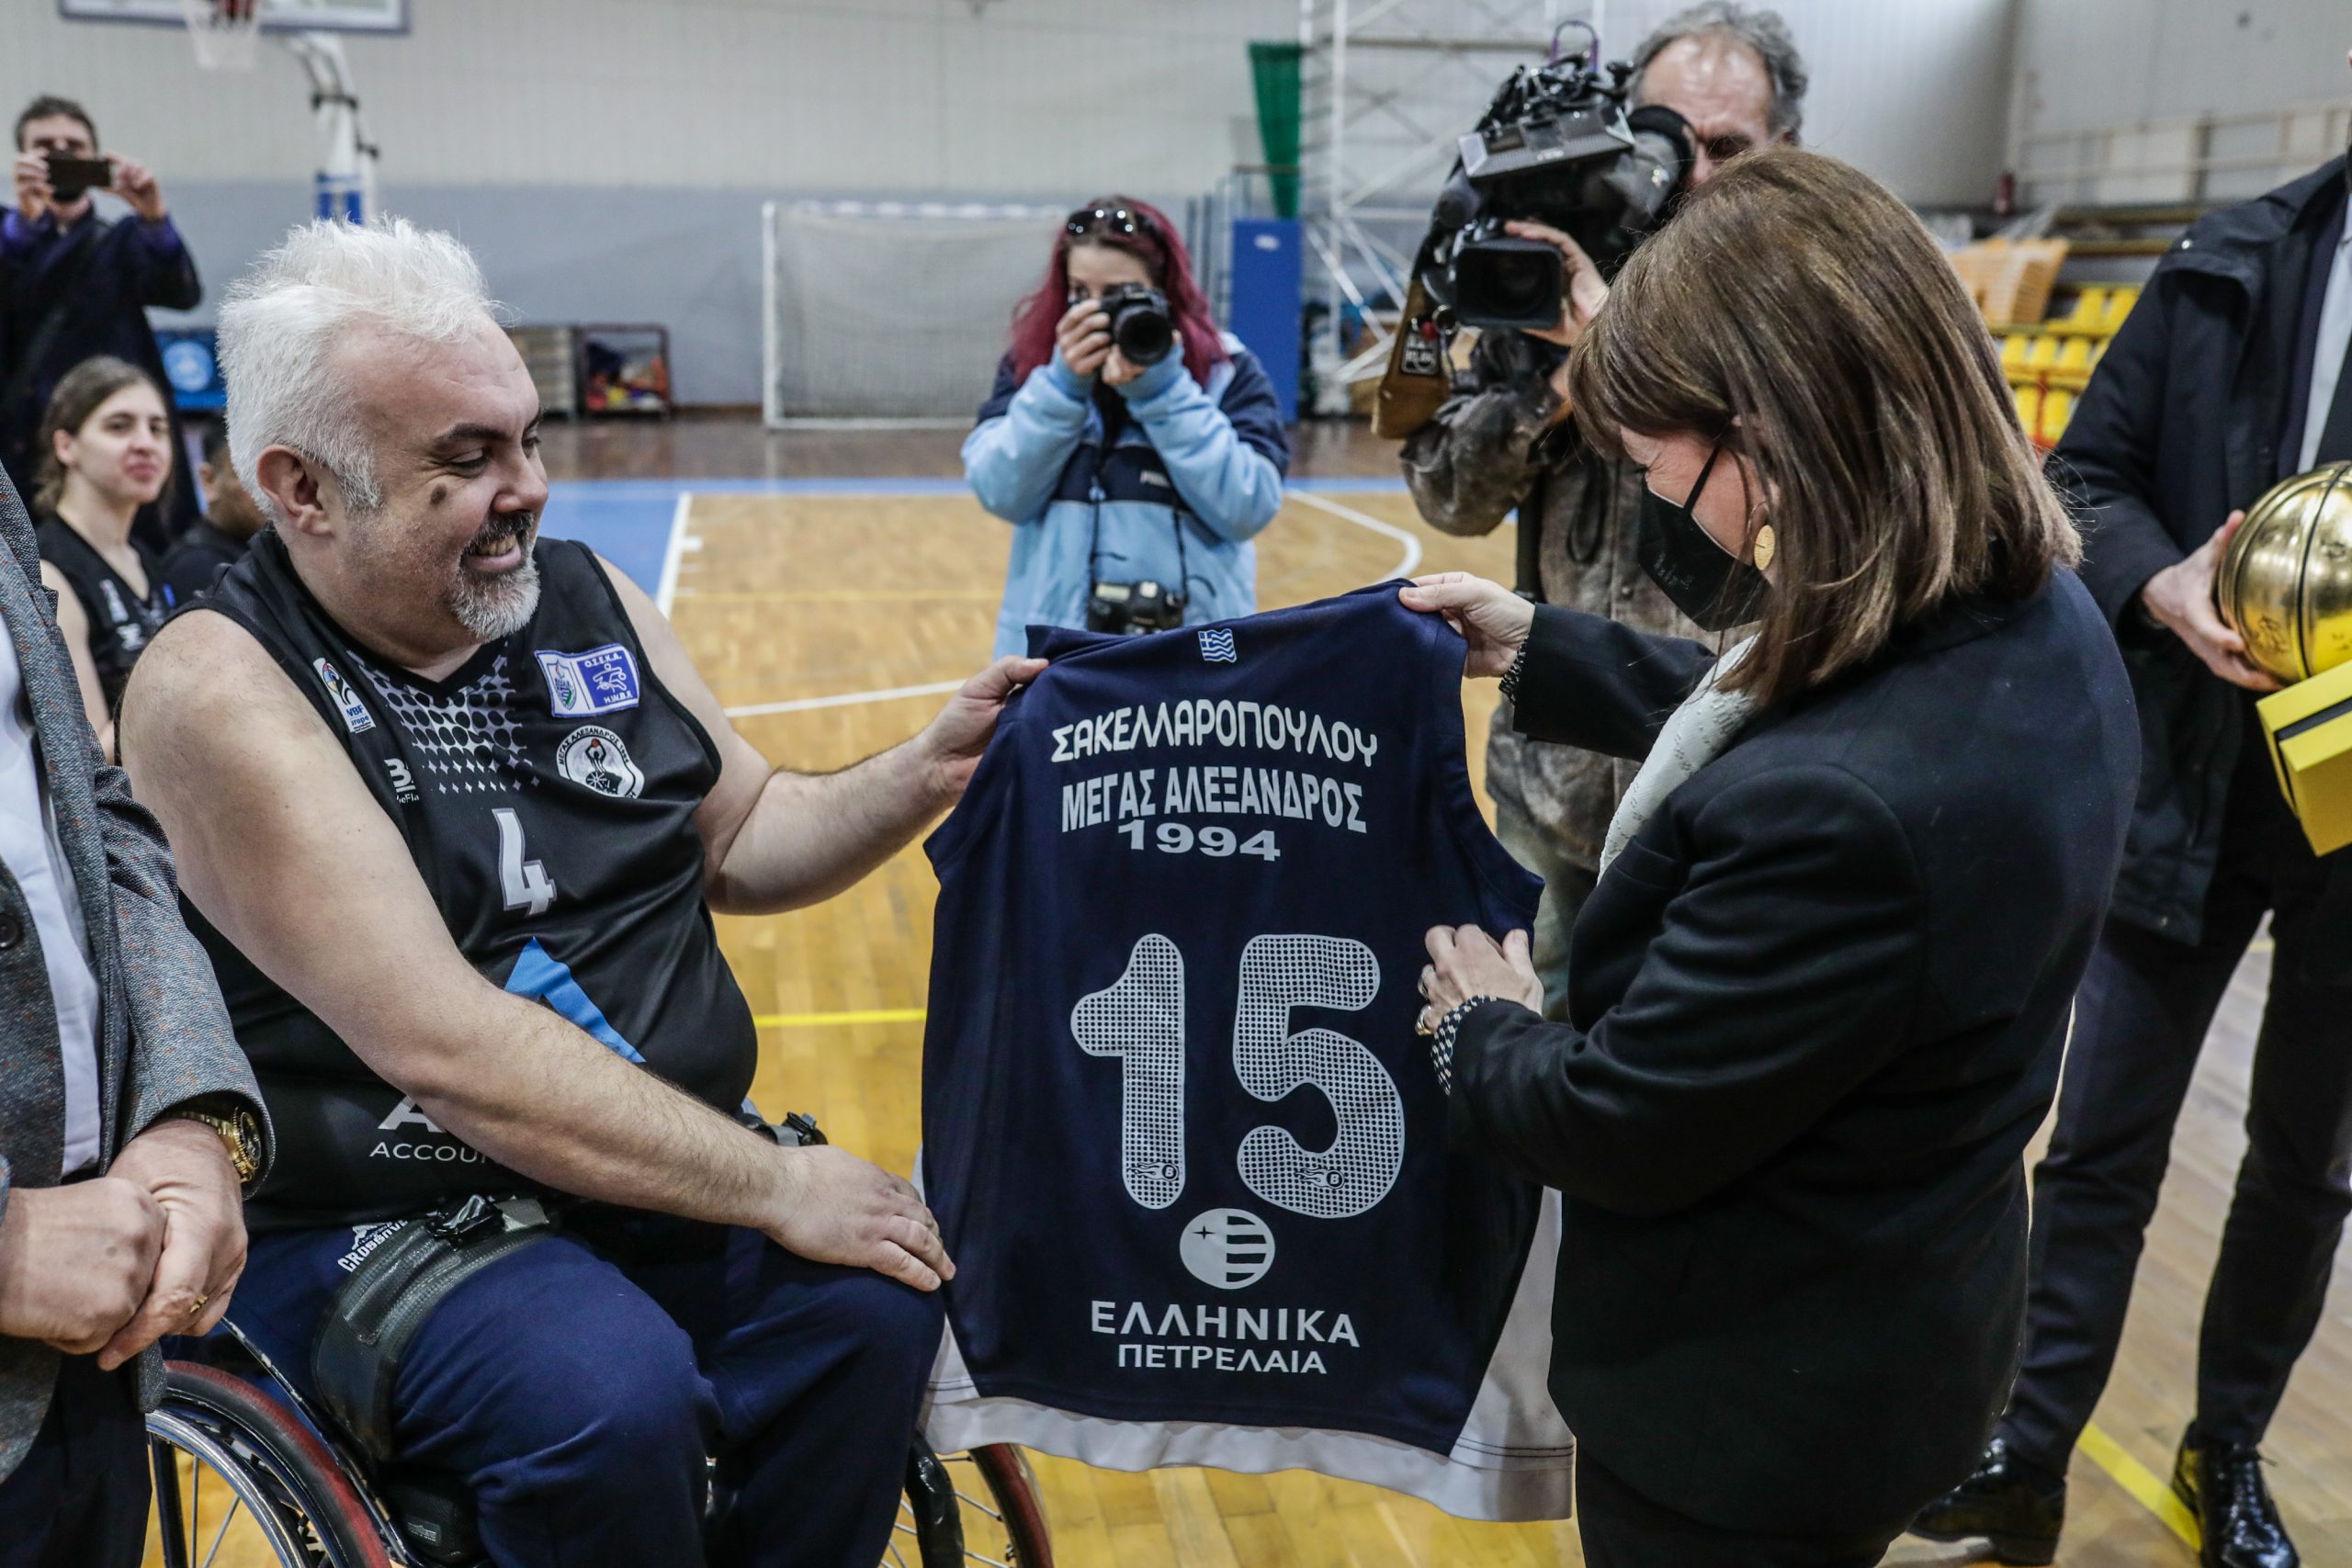 Η Πρόεδρος της Δημοκρατίας Κατερίνα Σακελλαροπούλου δέχεται δώρο μία φανέλα με το όνομά της μετά το τέλος του φιλικού αγώνα μπάσκετ ενηλίκων με αμαξίδια, που παρακολούθησε μεταξύ των ομάδων «Μέγας Αλέξανδρος» και «ΑΣΑΘ ΑΡΗΣ», στο κλειστό Δημοτικό Αθλητικό Κέντρο Πανοράματος, το Σάββατο 19 Μαρτίου 2022. 